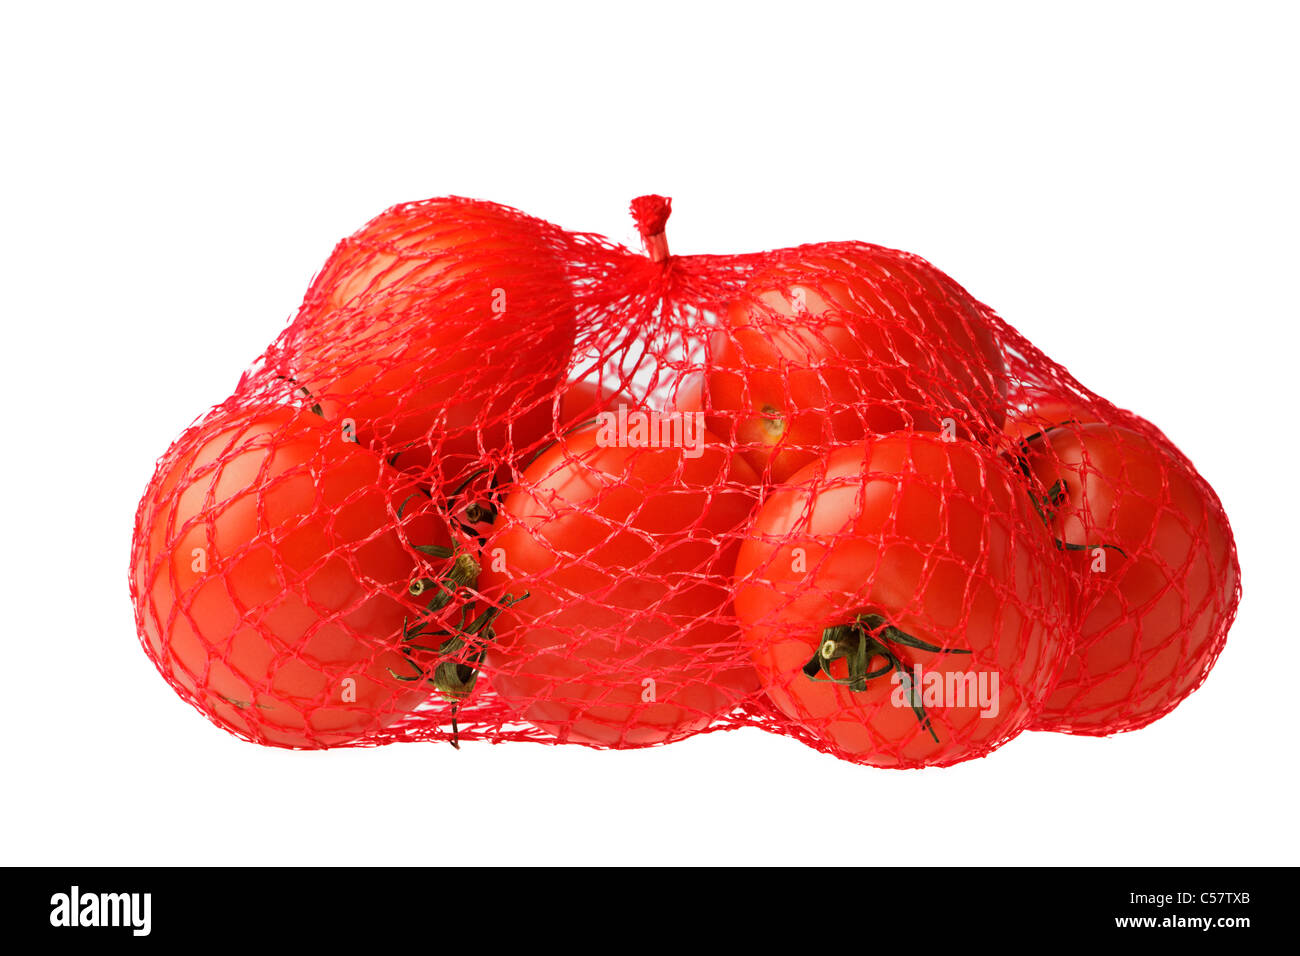 Sac de tomates mûres sur un fond blanc Banque D'Images